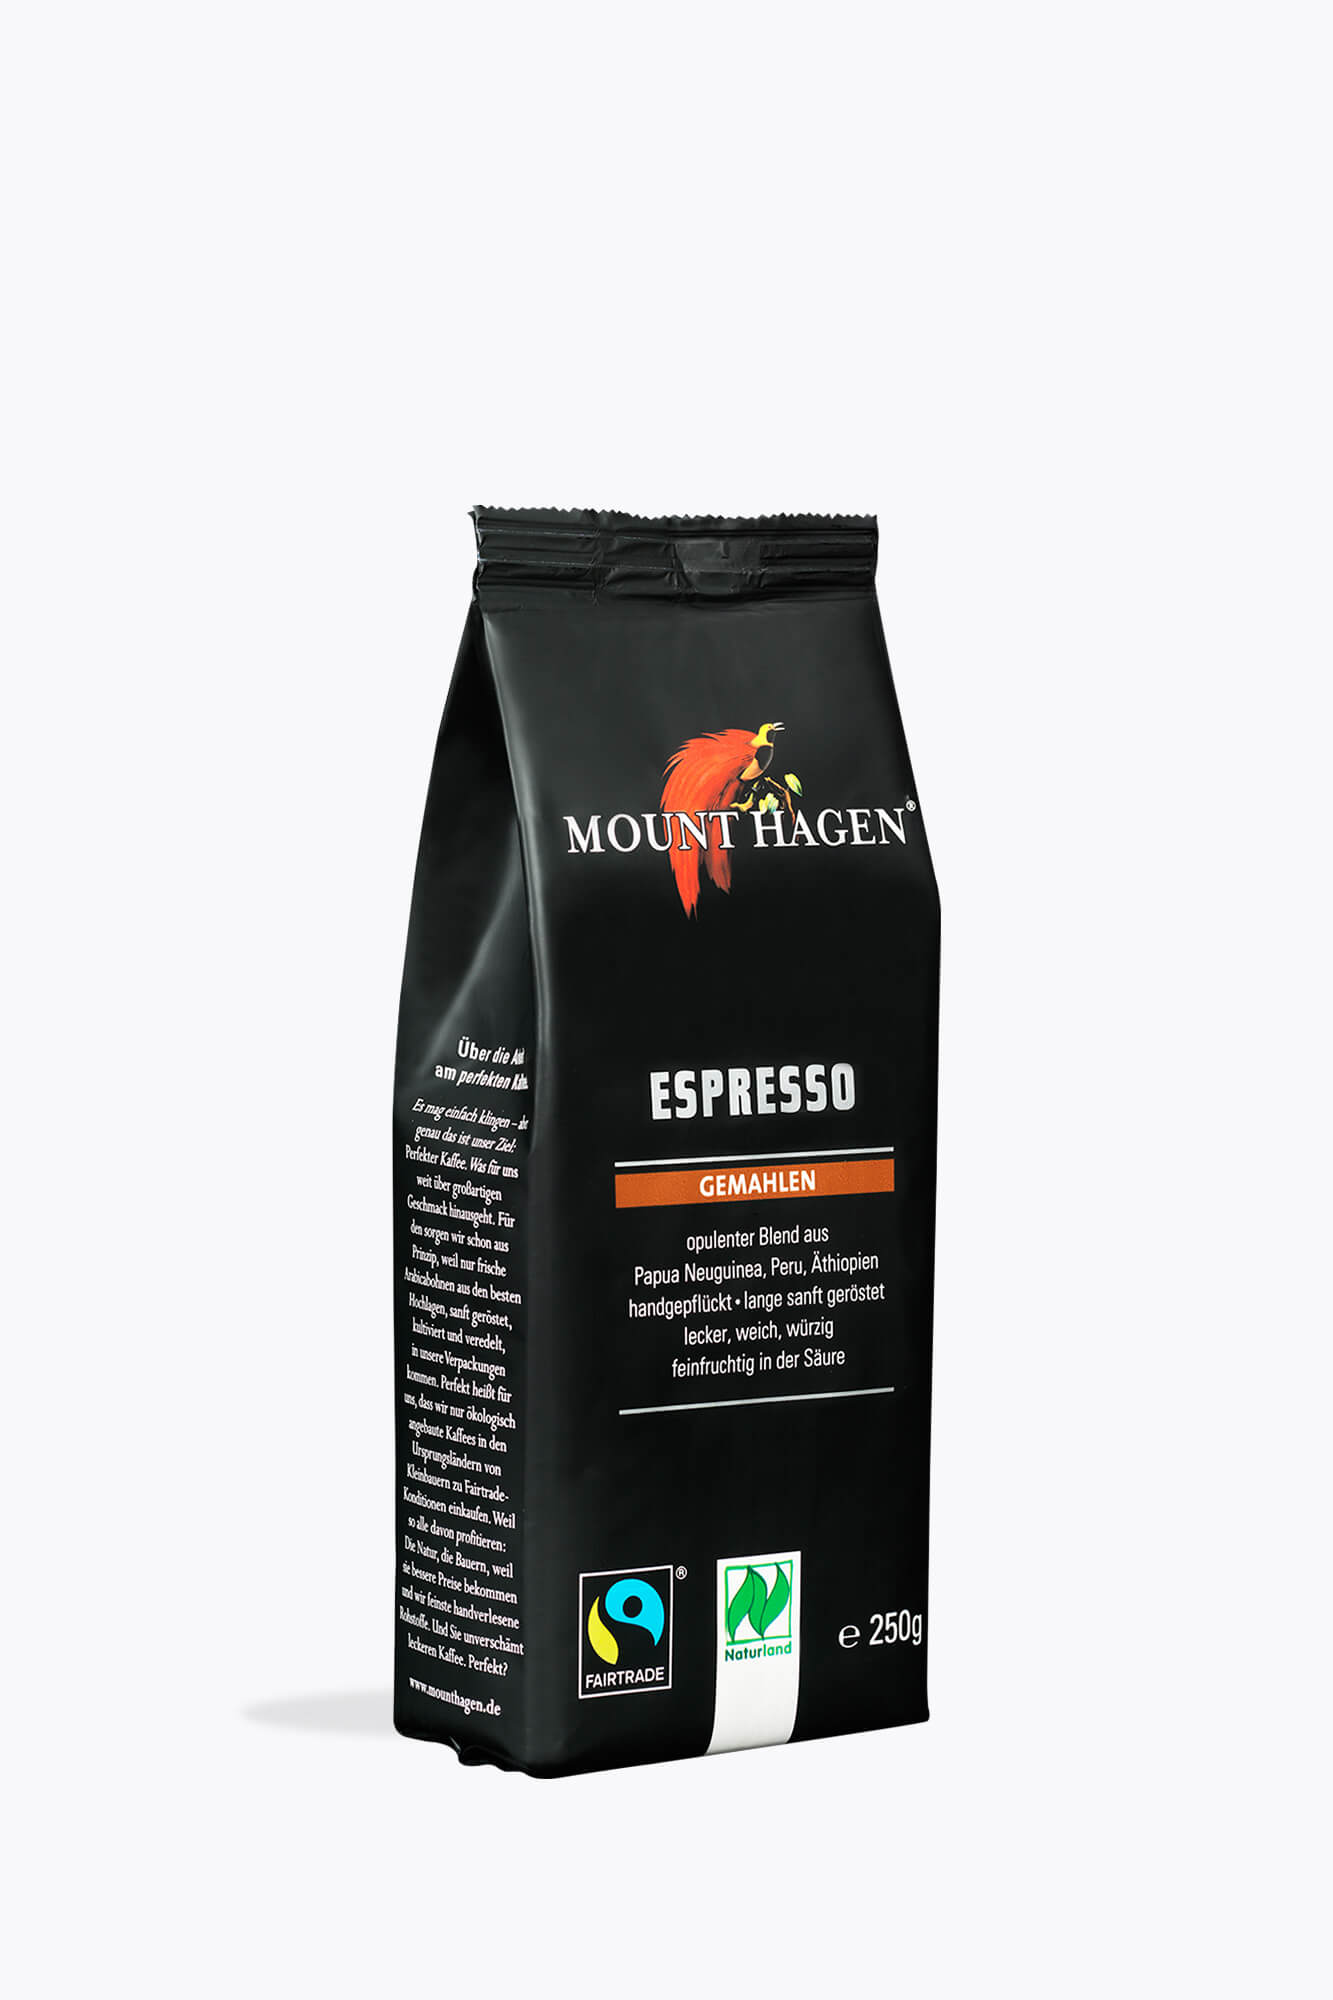 Hagen Mount Hagen Espresso gemahlen 250g